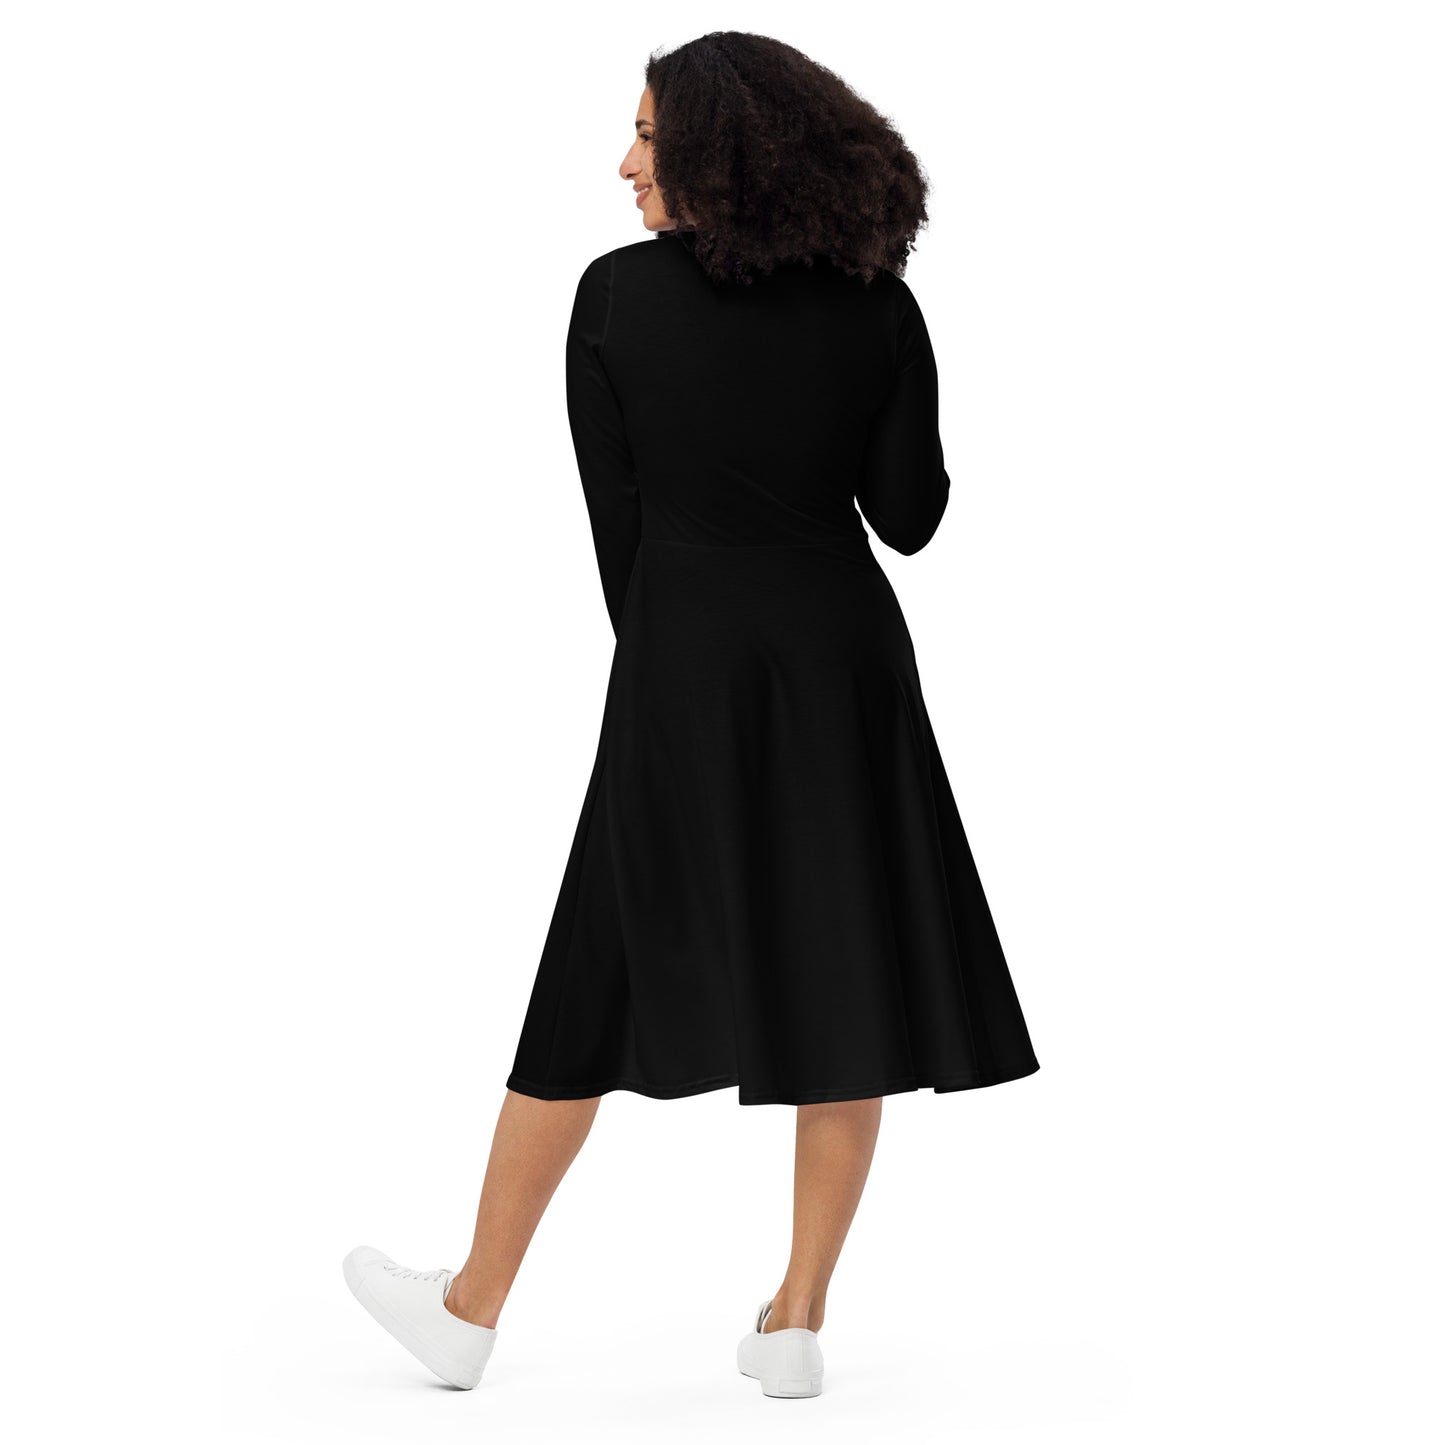 Menkrav Initiate black long sleeve dress